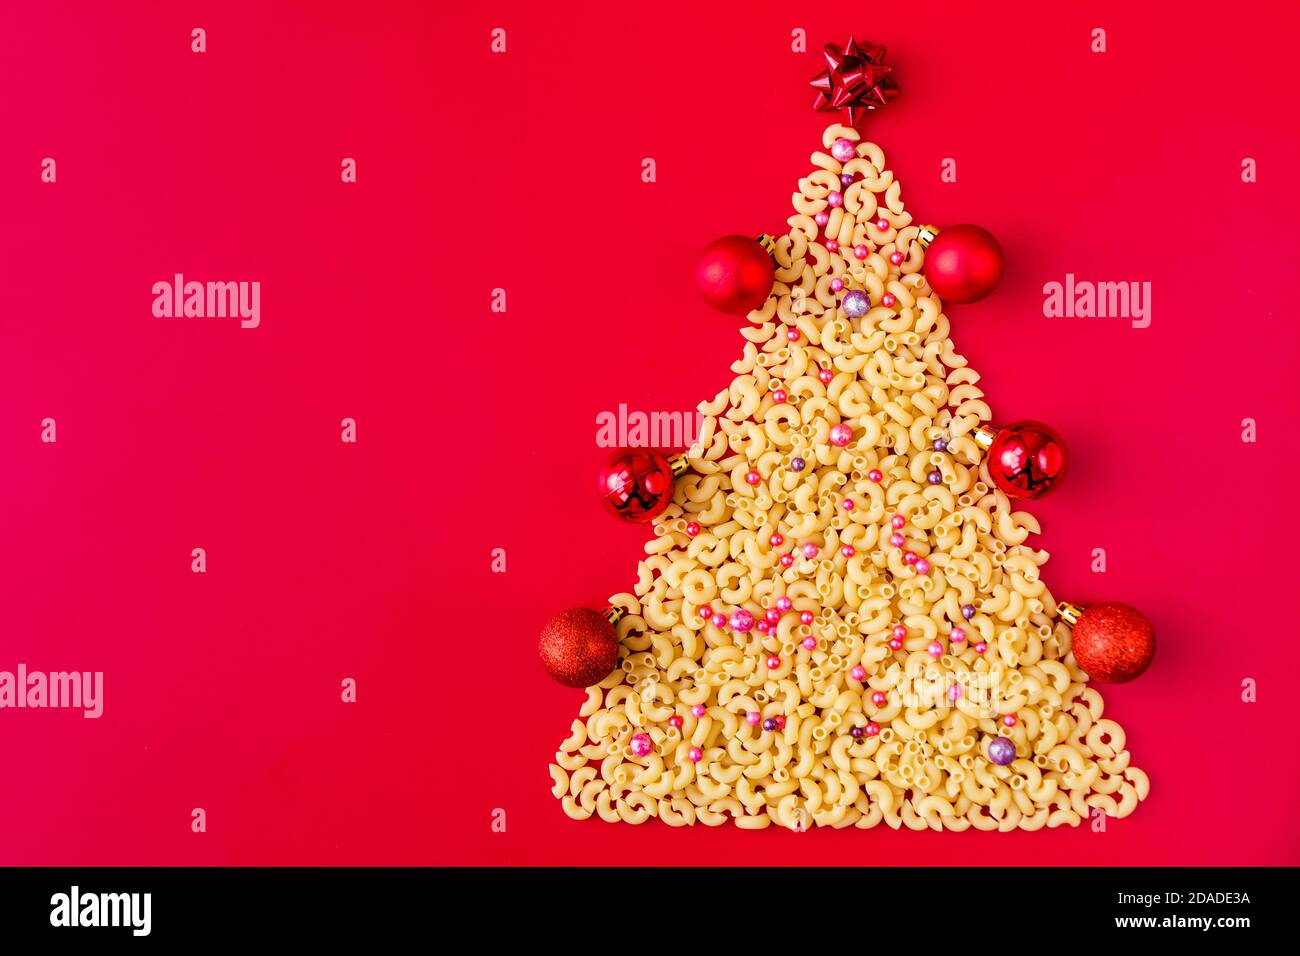 Arbre de Noël fait de pâtes italiennes crues avec des boules rouges isolées sur fond rouge.Concept vacances d'hiver Banque D'Images